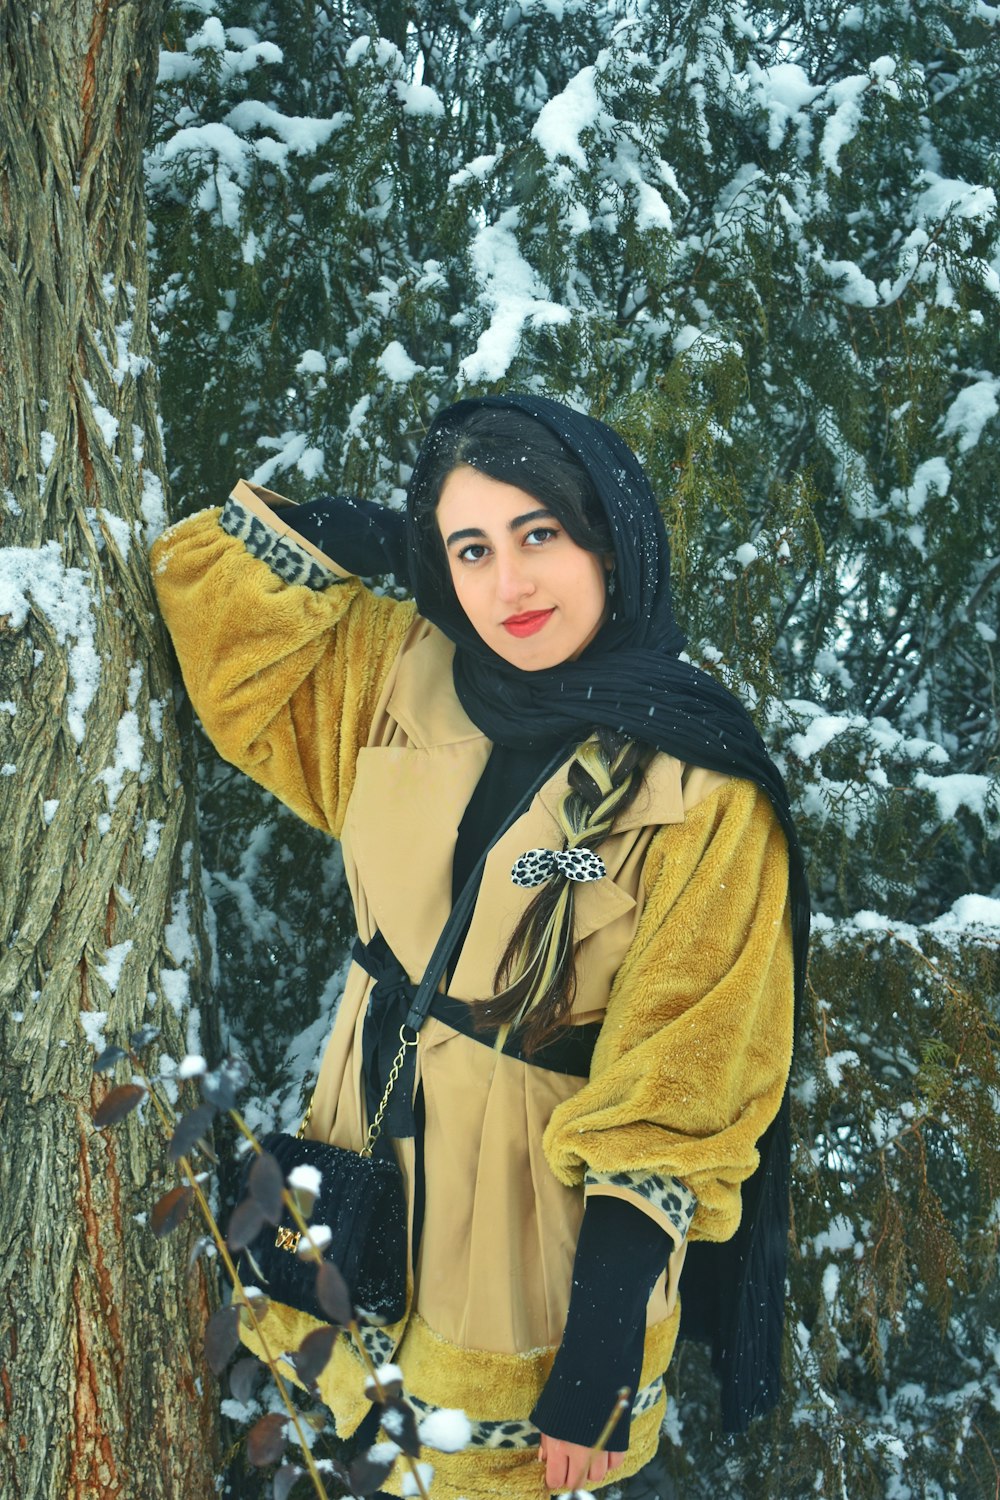 Eine Frau steht neben einem Baum im Schnee